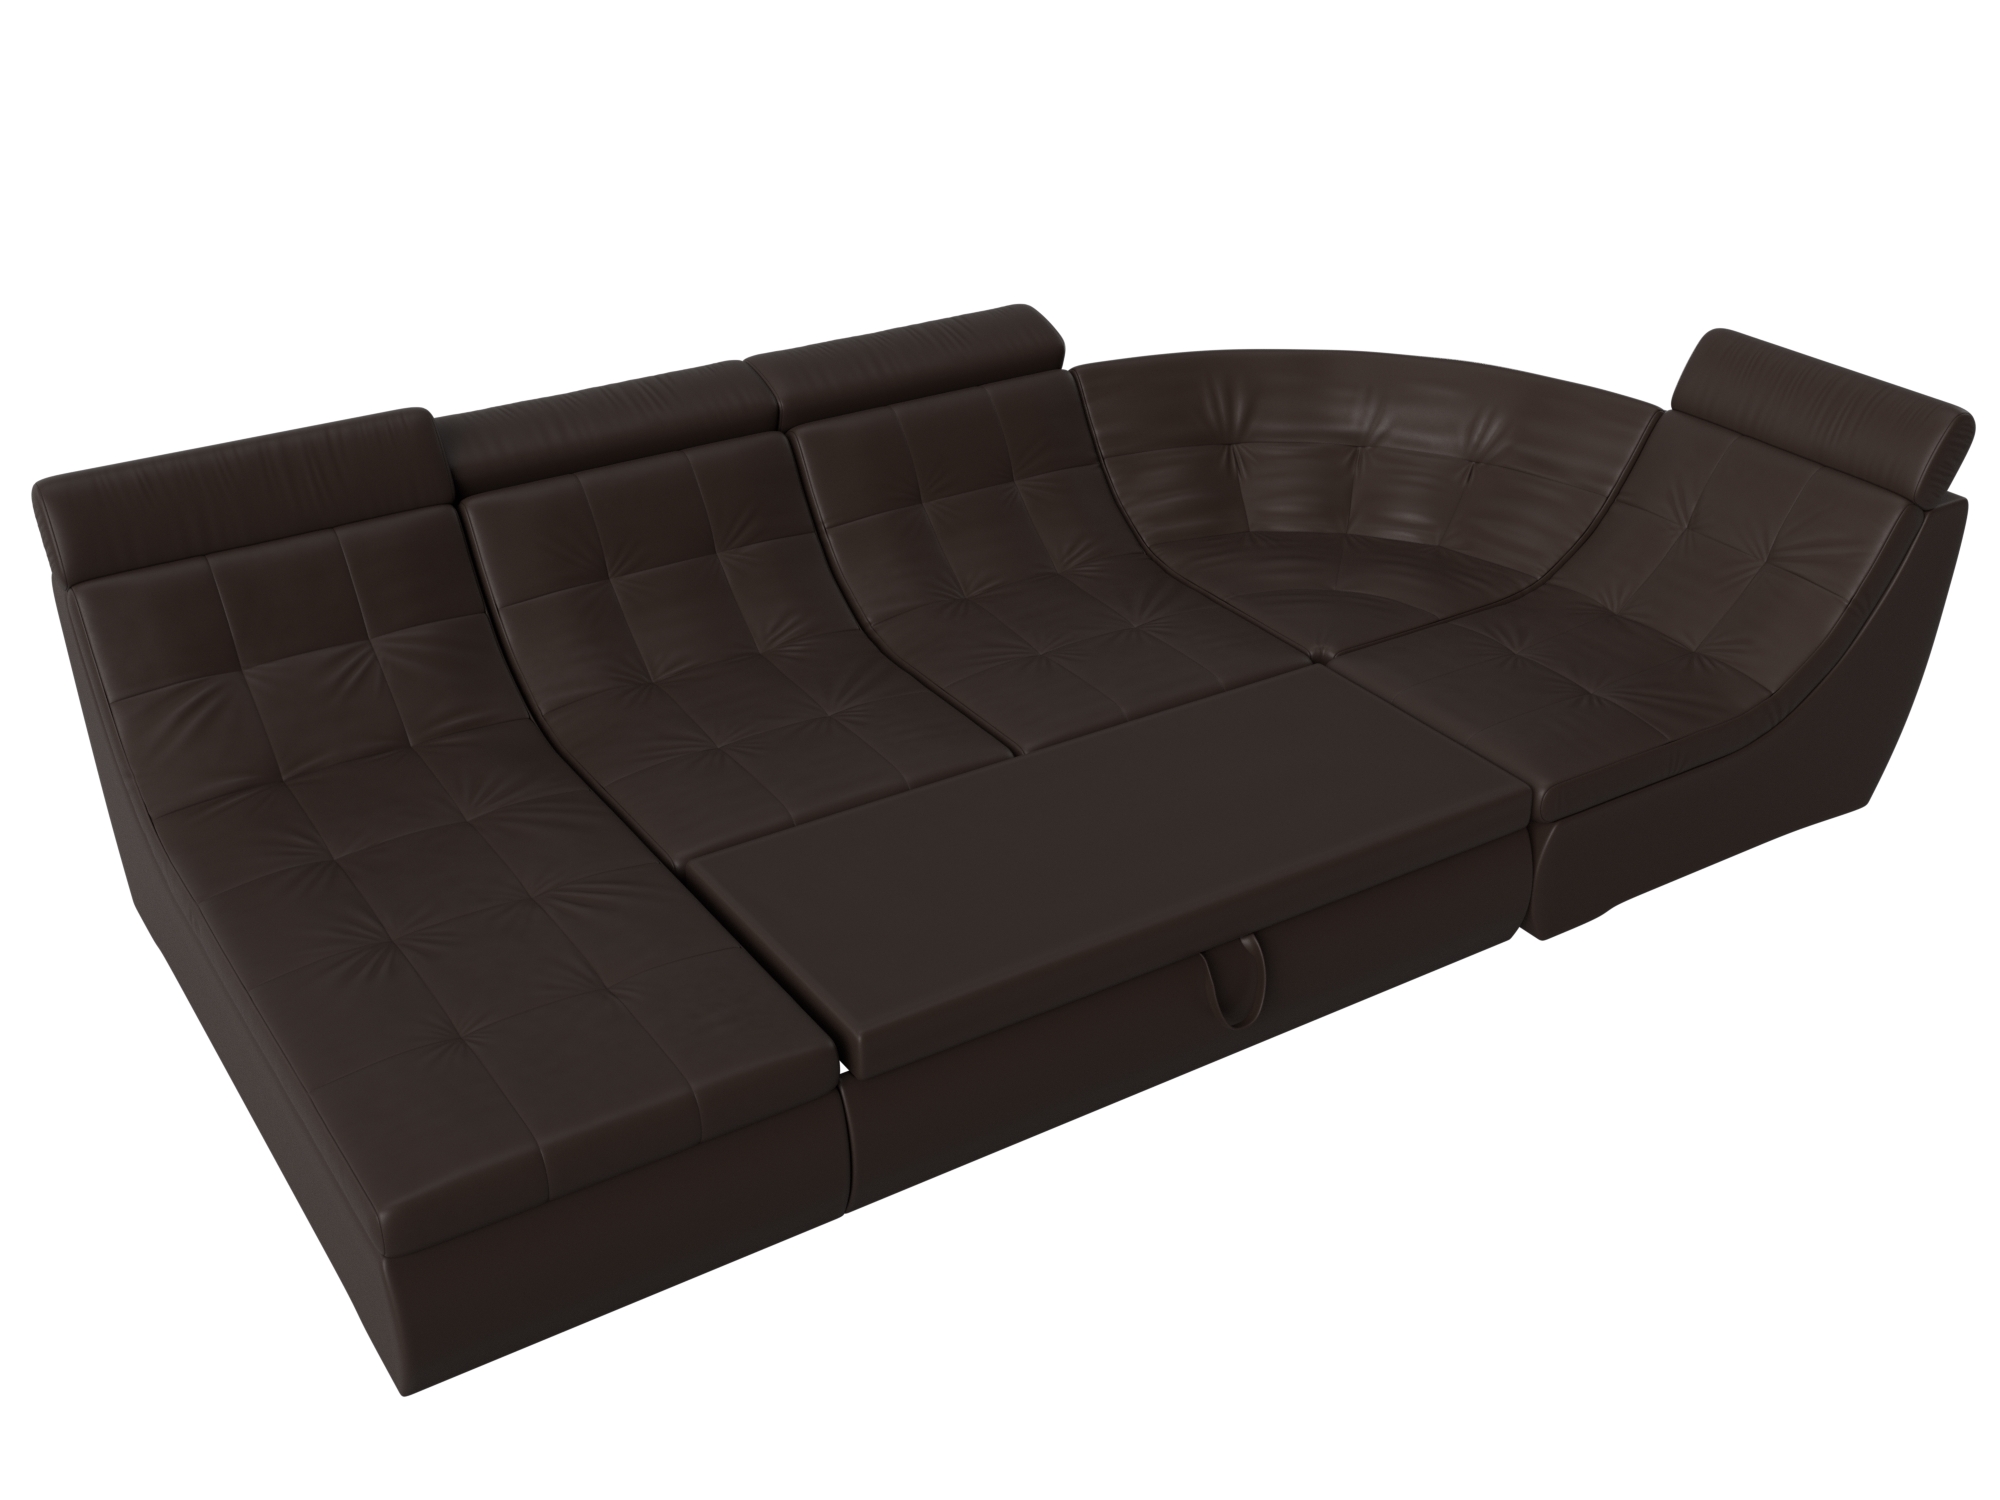 П-образный модульный диван Холидей Люкс Коричневый